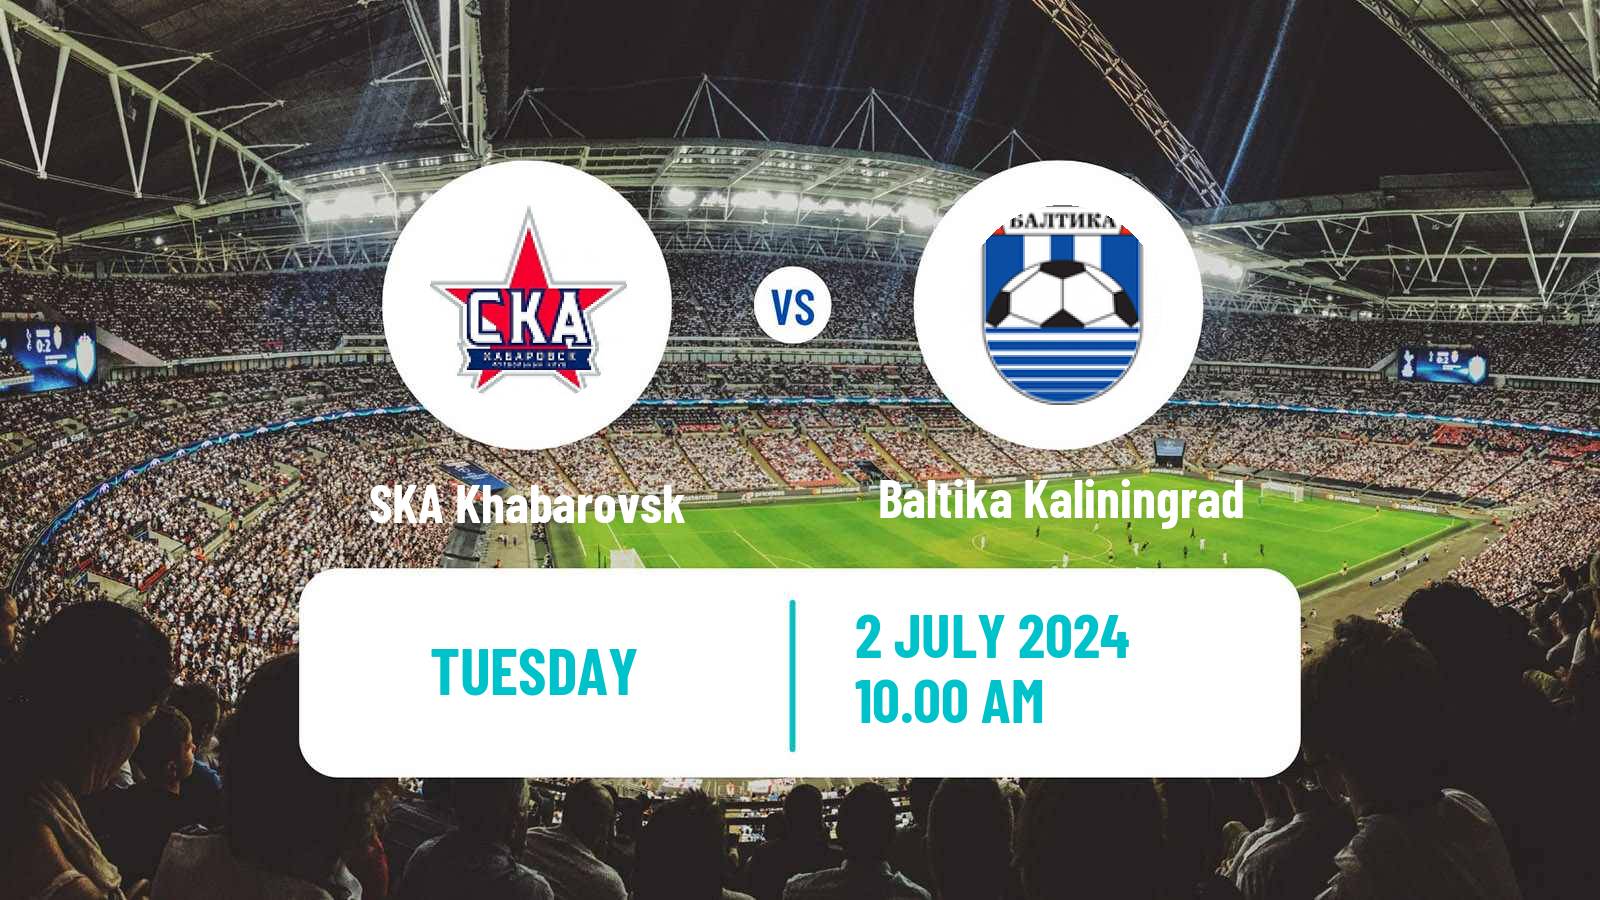 Soccer Club Friendly SKA Khabarovsk - Baltika Kaliningrad